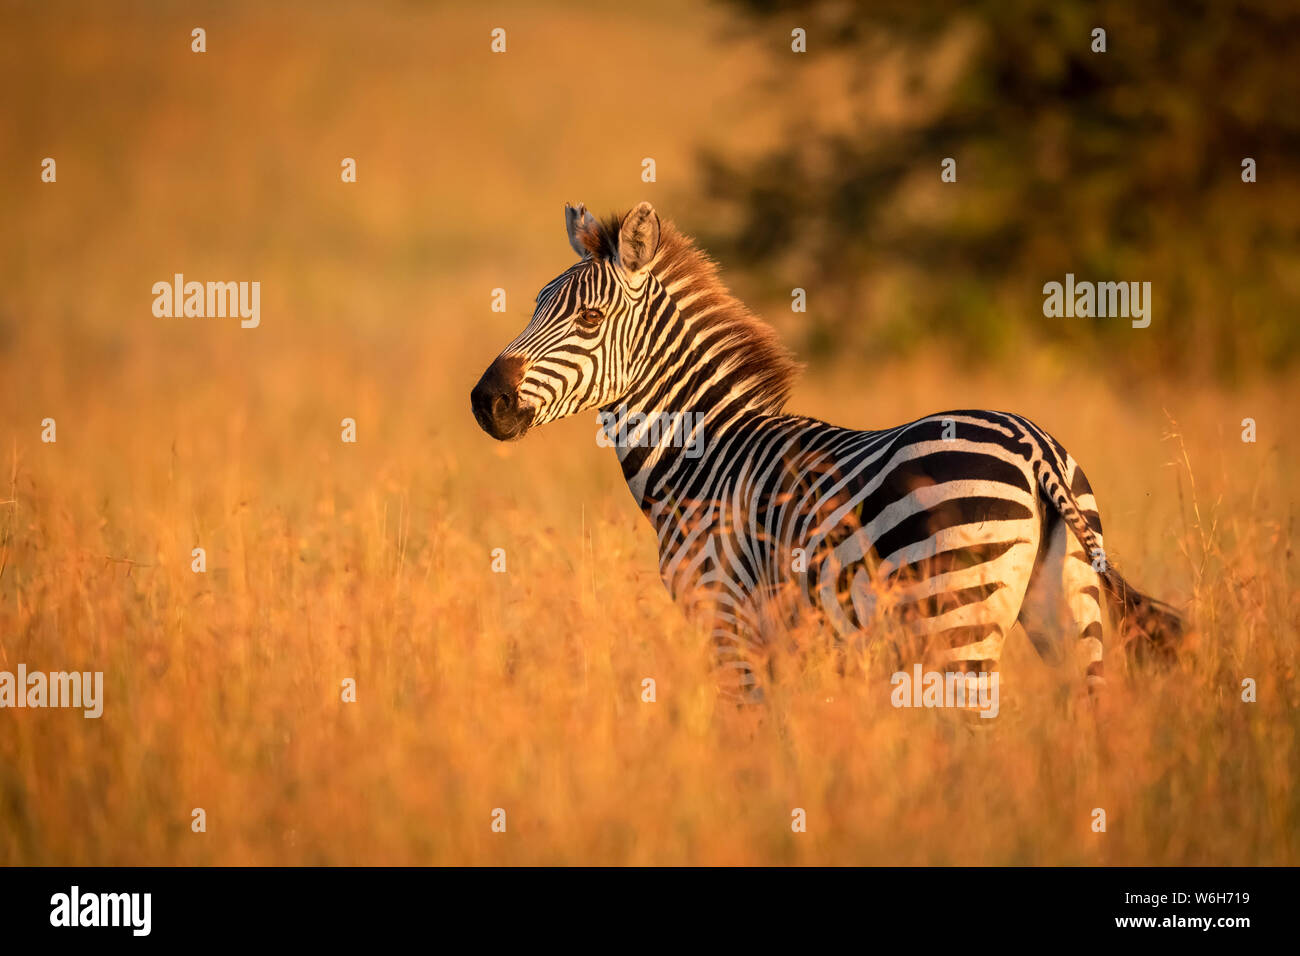 Ebenen Zebras (Equus quagga) im Gras beobachten Kamera steht, Serengeti National Park, Tansania Stockfoto